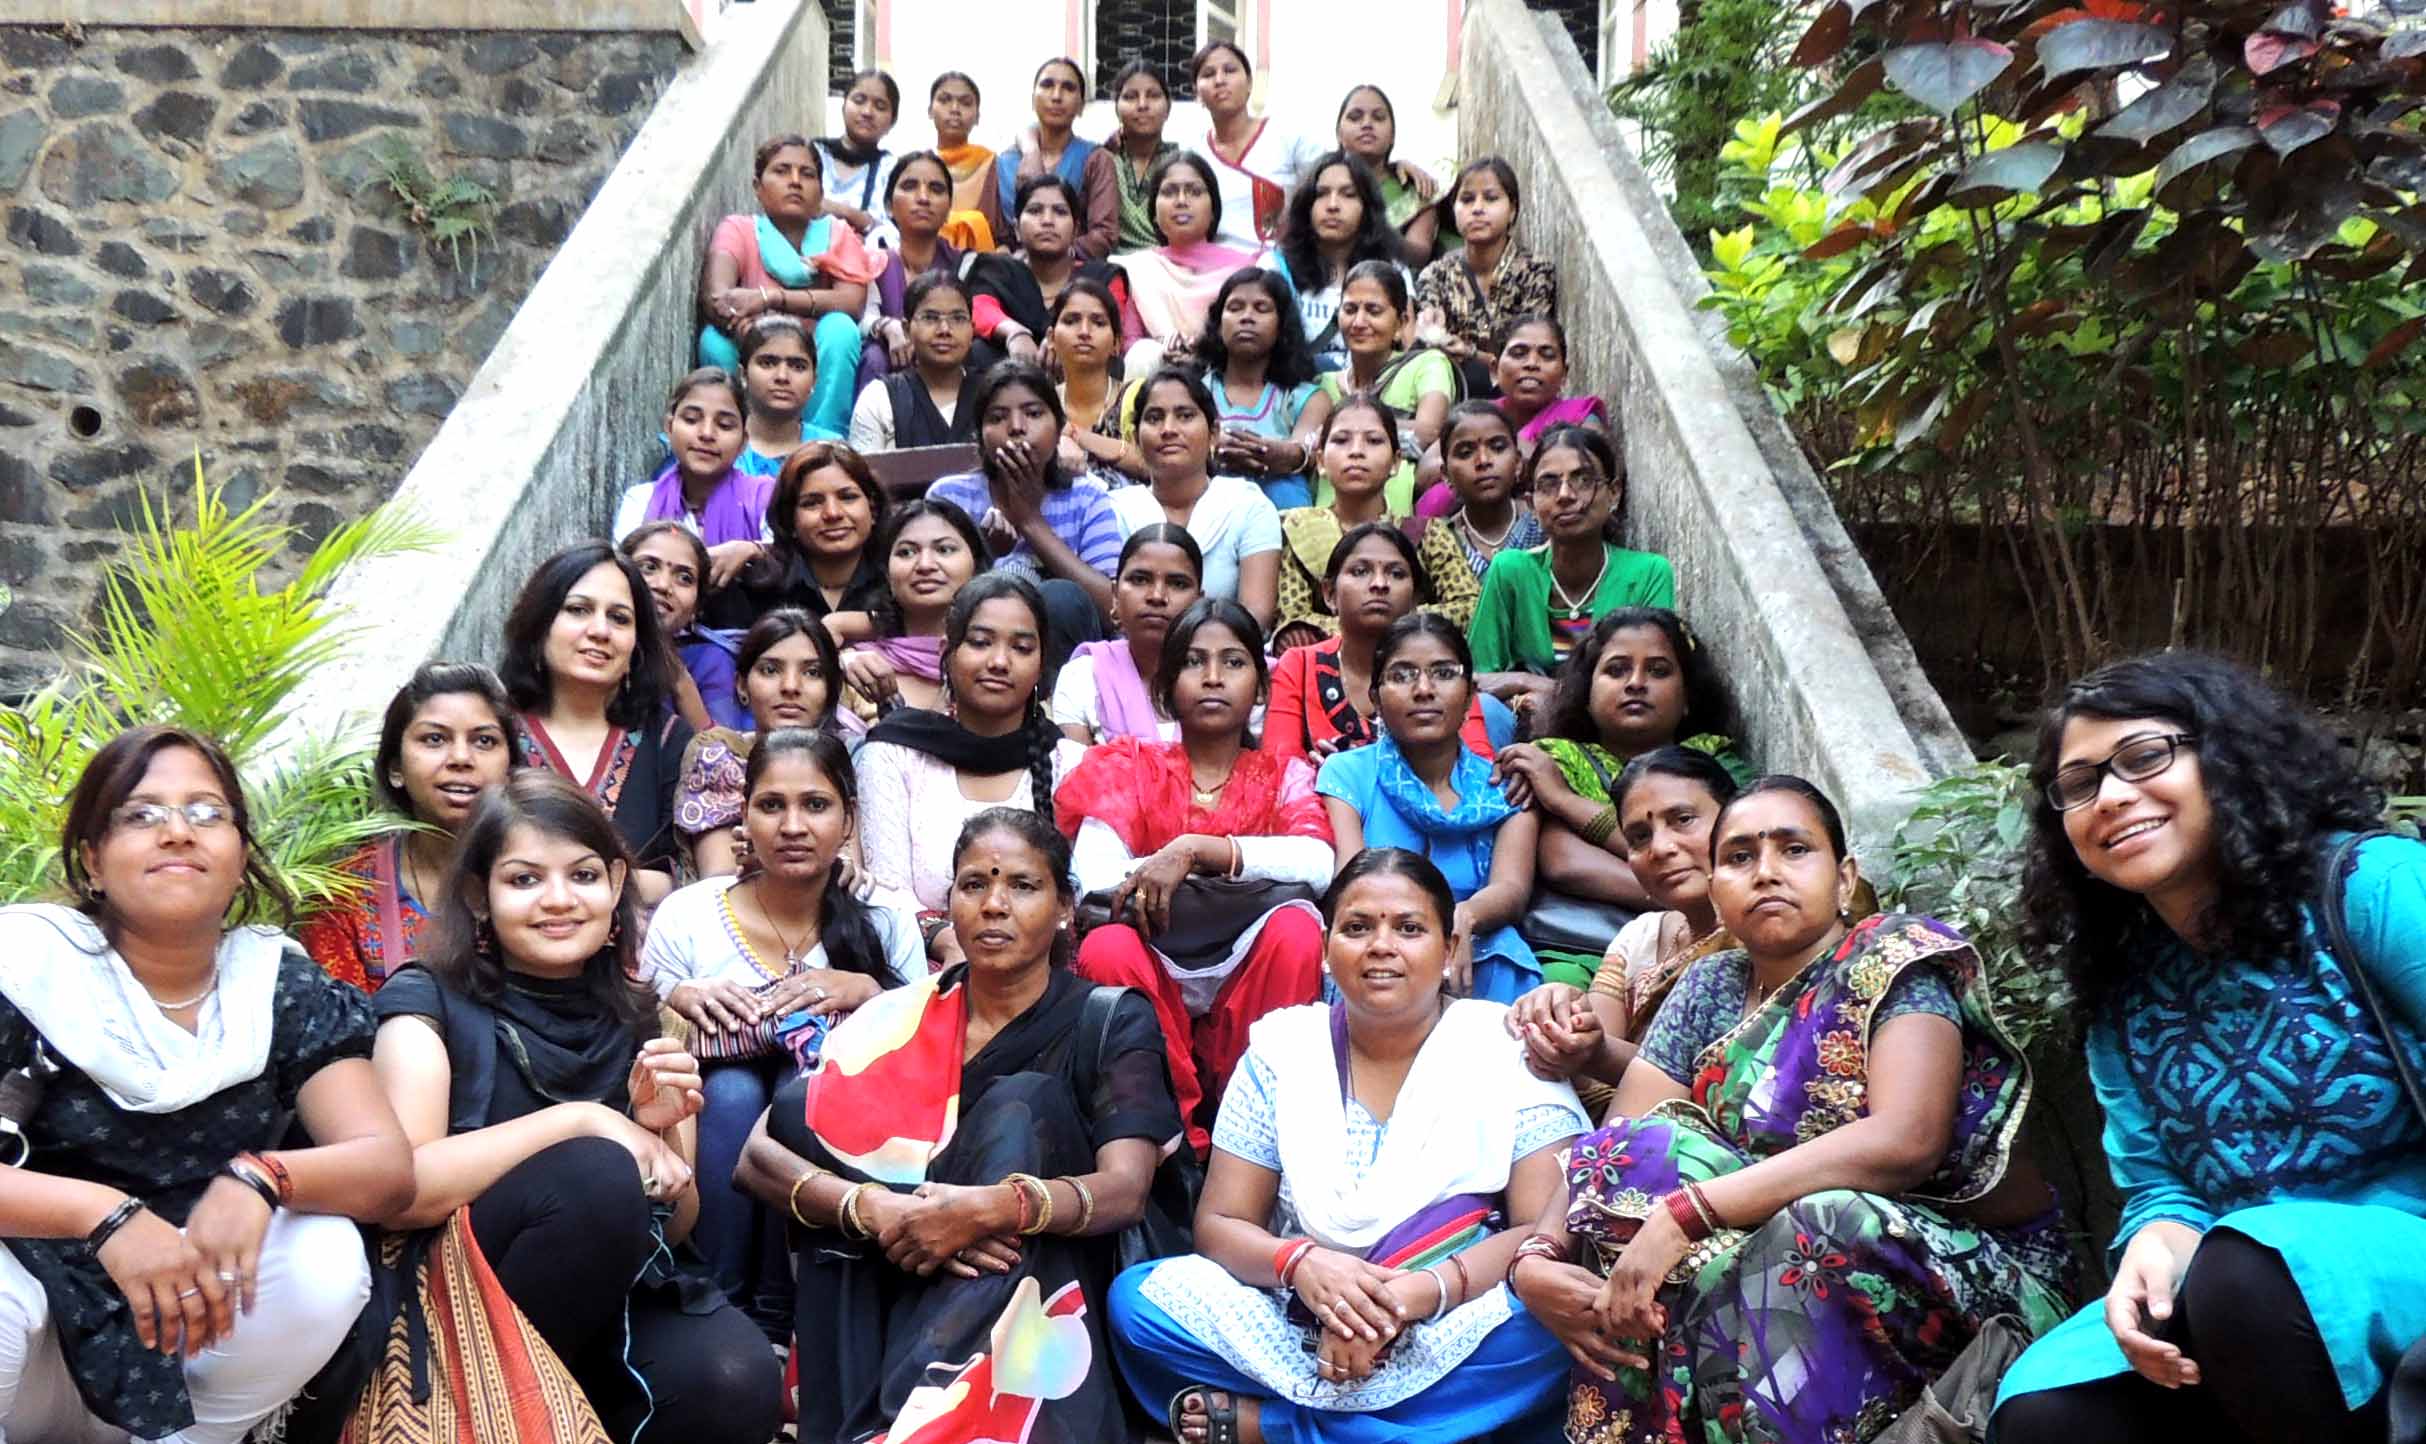 Khabar Lahariya Team : The 40 ladies. Photo Credit: Poorvi Bhargava